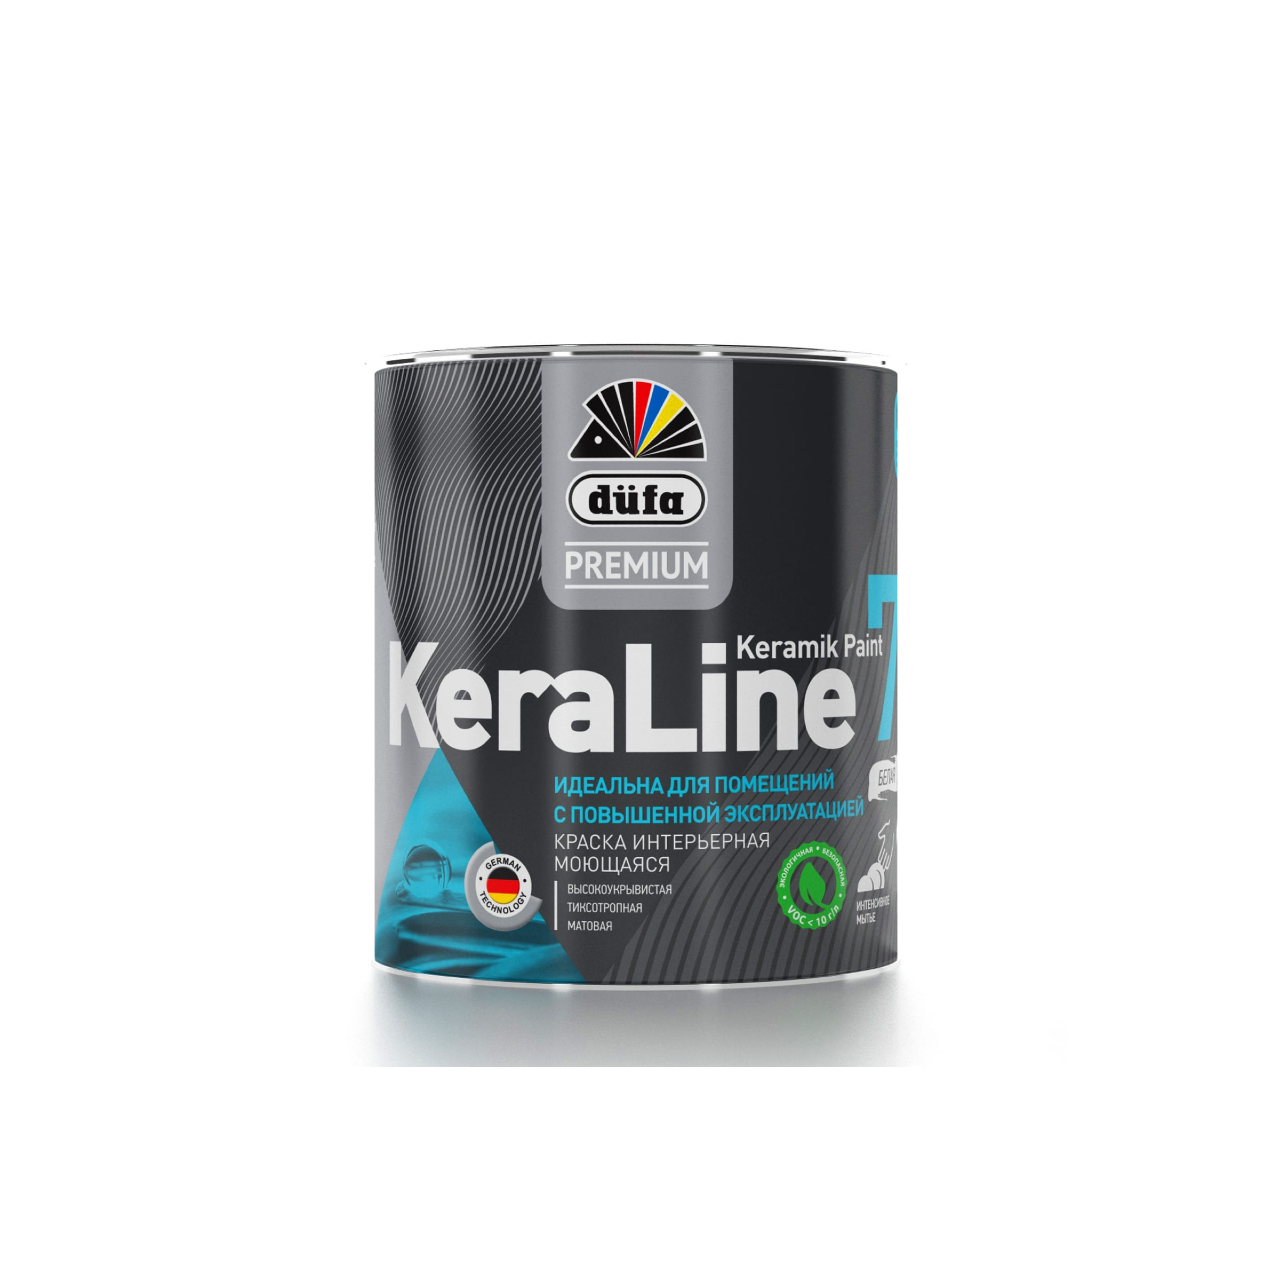 90190604 Краска для стен и потолков моющаяся Premium KeraLine Keramik Paint 7 матовая белая база 1 0.9 л STLM-0126756 DUFA